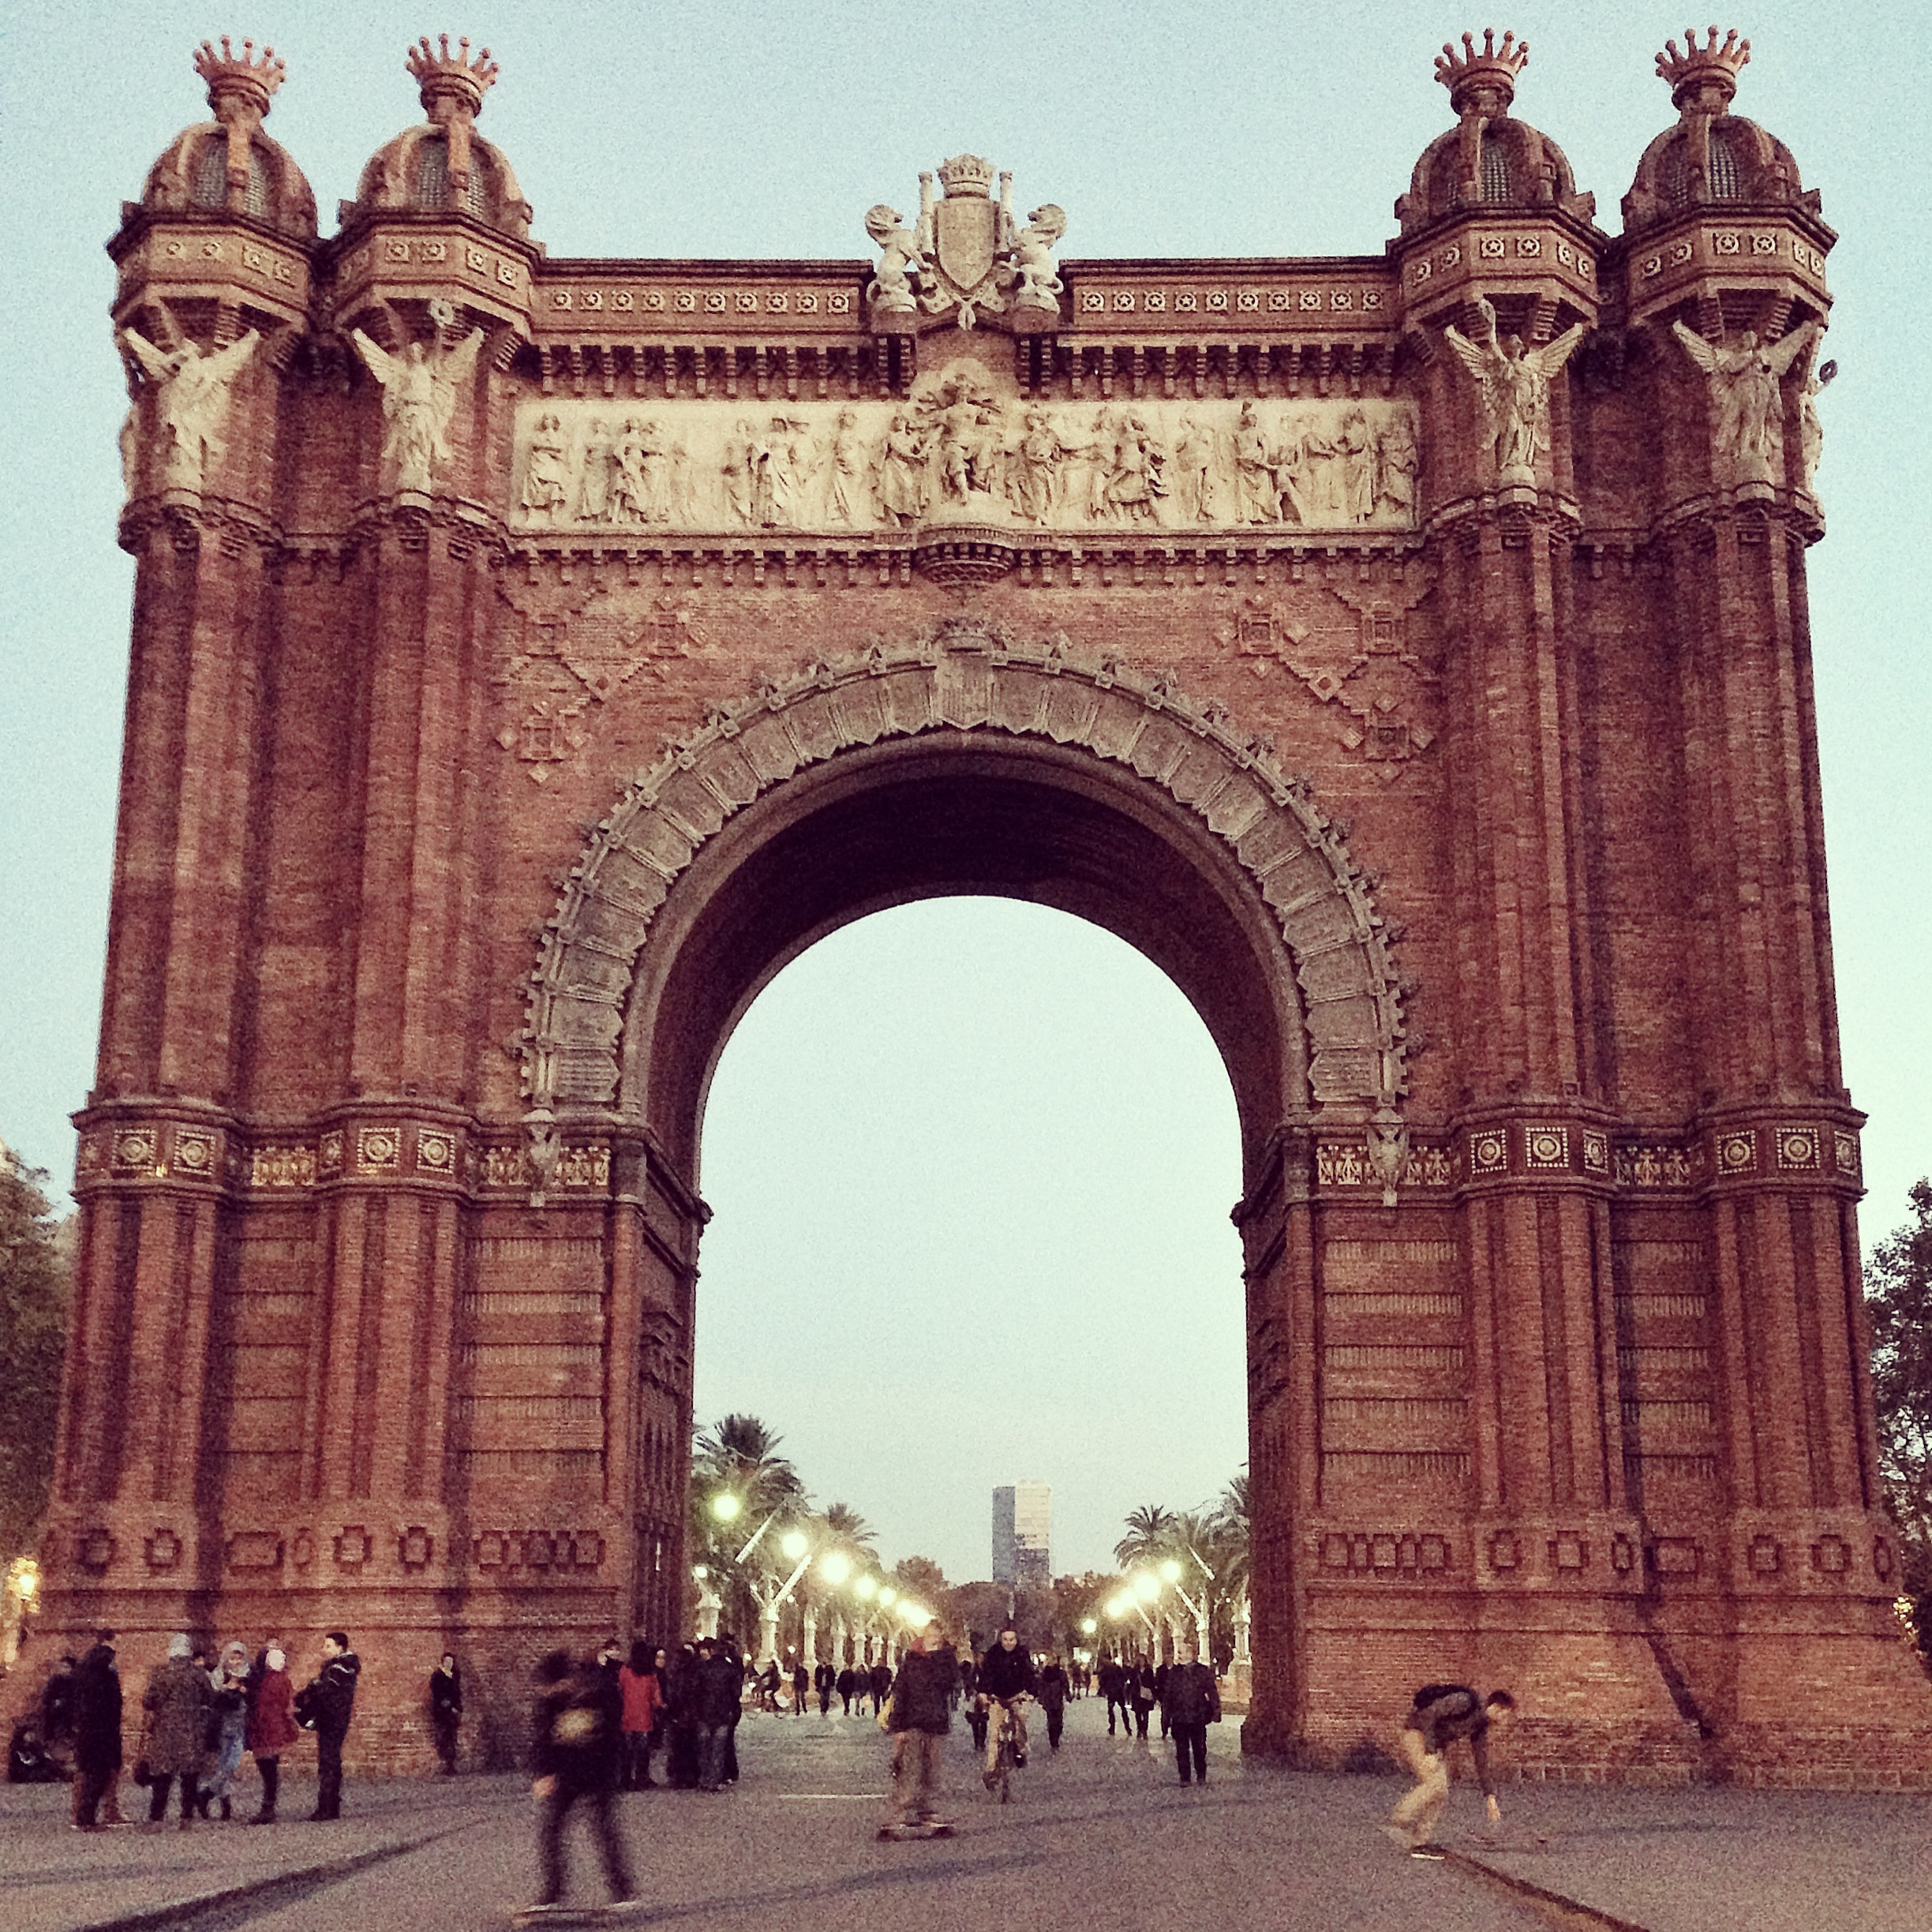 Arc de Triomf, Barcelona, 2013